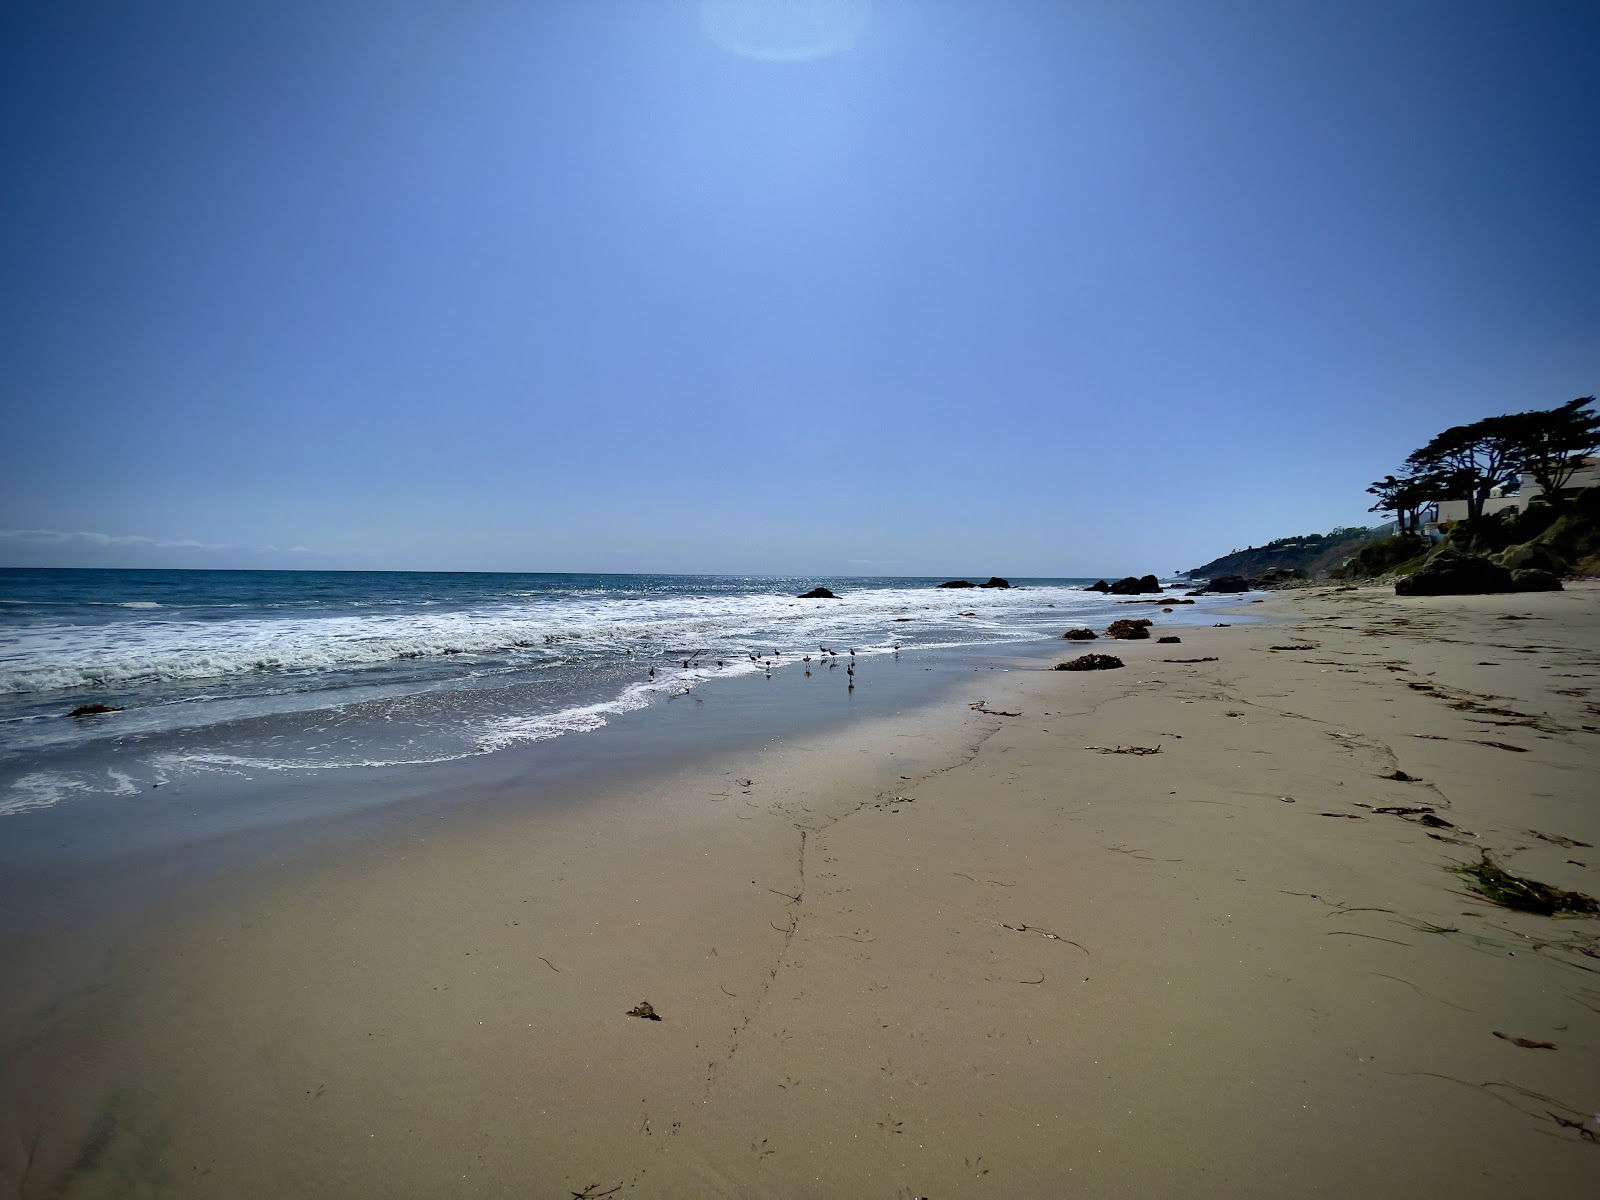 Fotografie cu Lechuza Beach cu o suprafață de nisip strălucitor